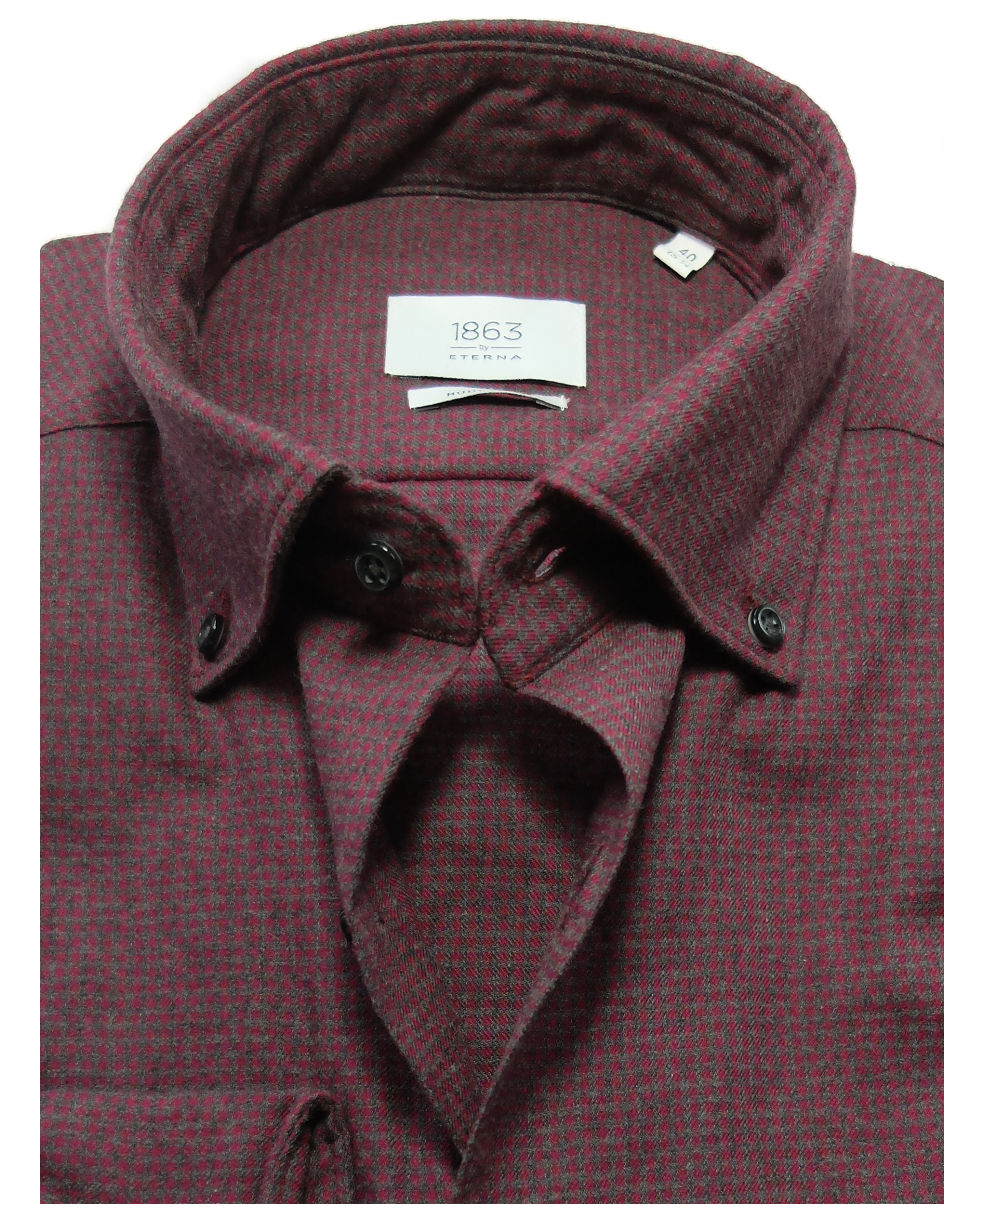 eterna Premium 1863 Wool Cotton Langarmhemd Modern rot-grau MINIKARO -  Hochwertige Herrenmode führender Marken zu fairen